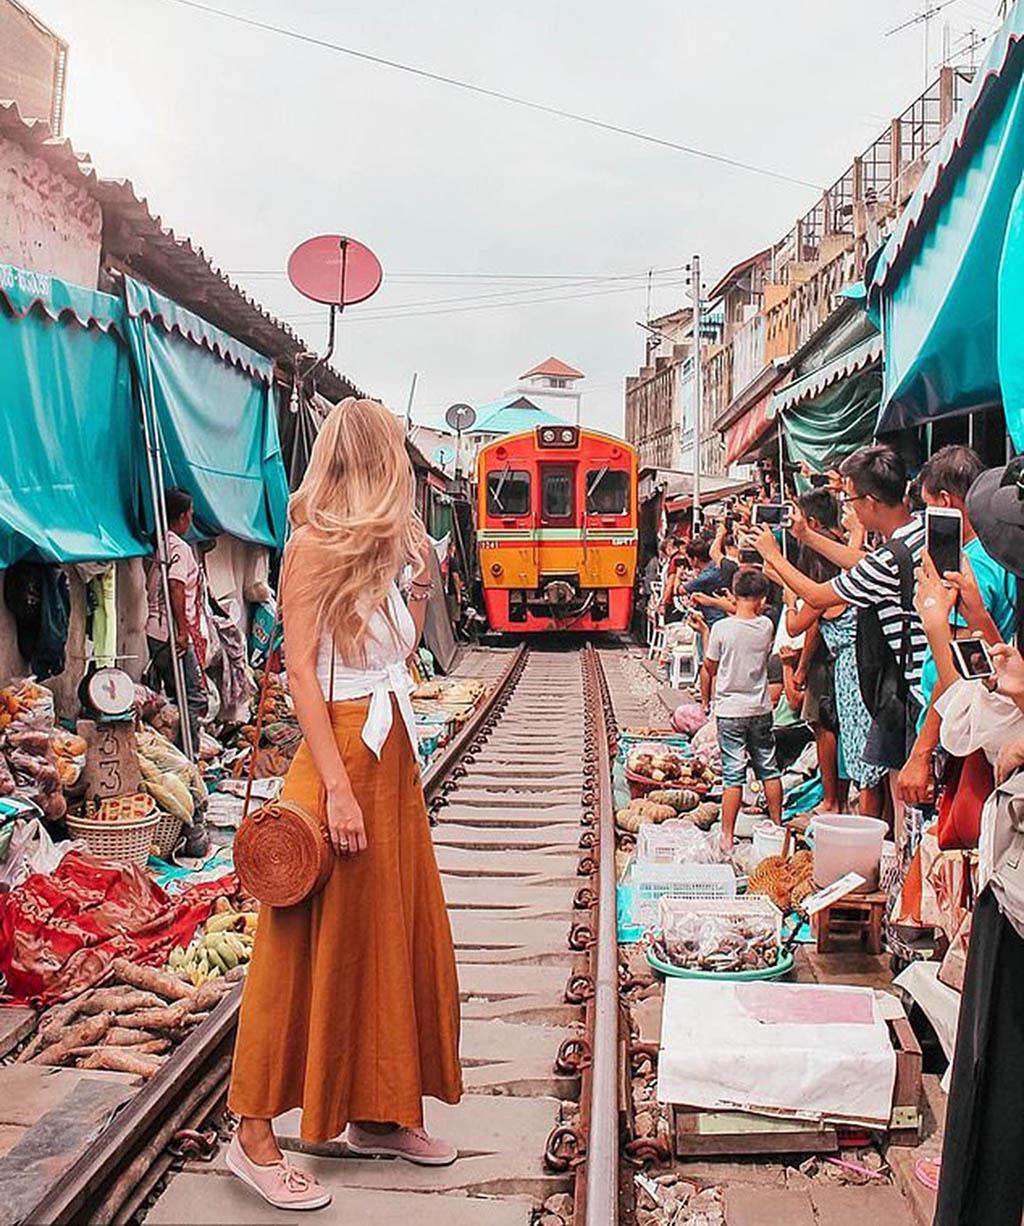 Chợ đường ray Maeklong – Địa điểm sống ảo mạo hiểm ở Bangkok